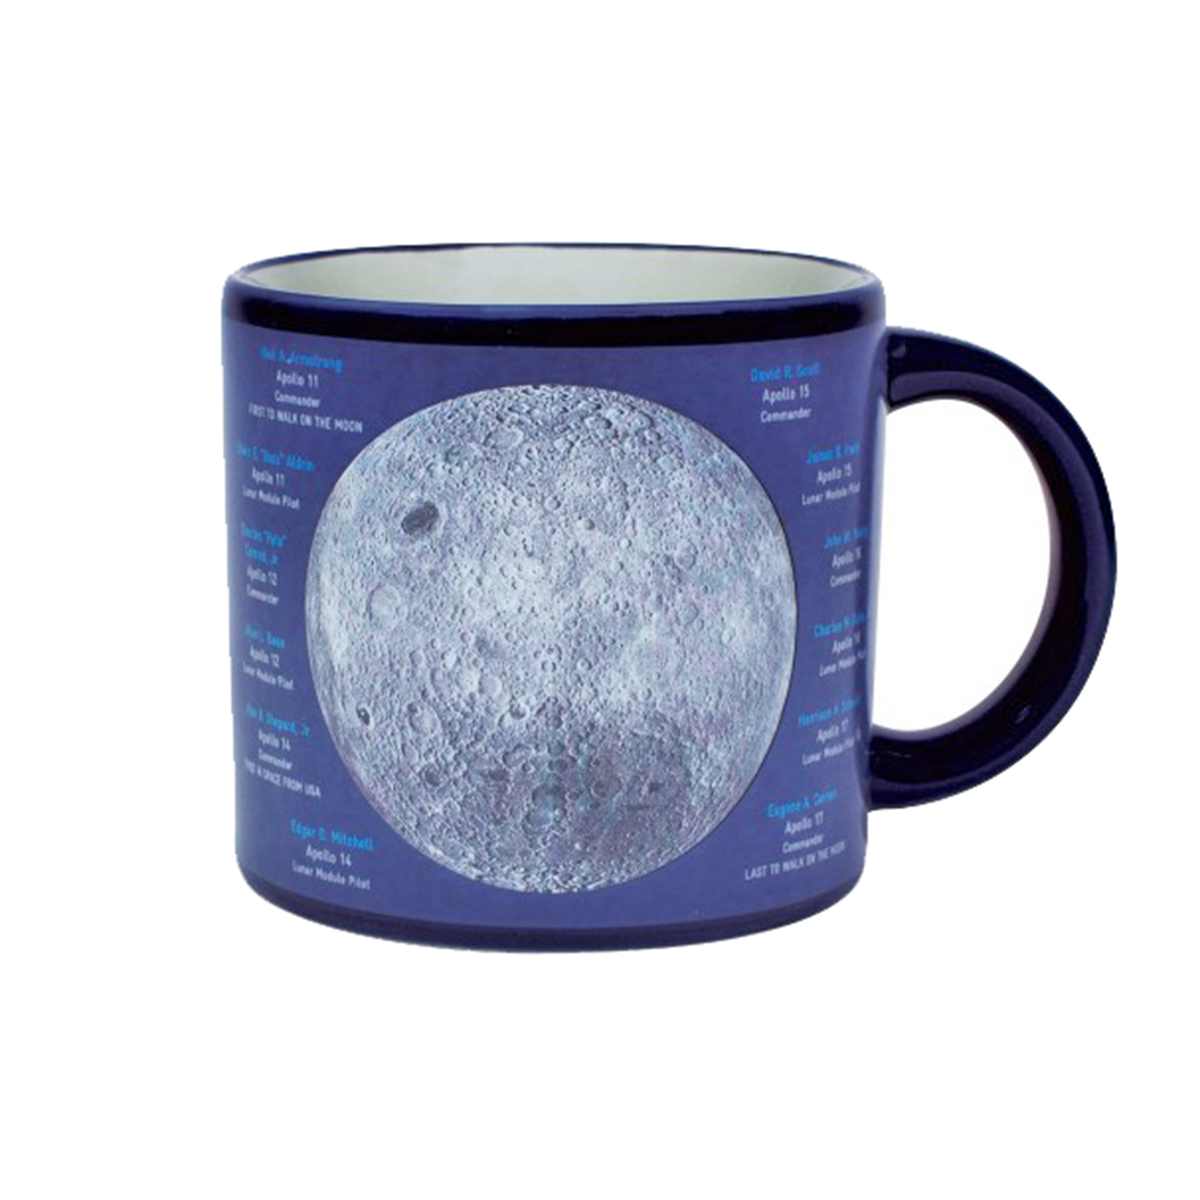 The Moon Heat Change Mug additional image